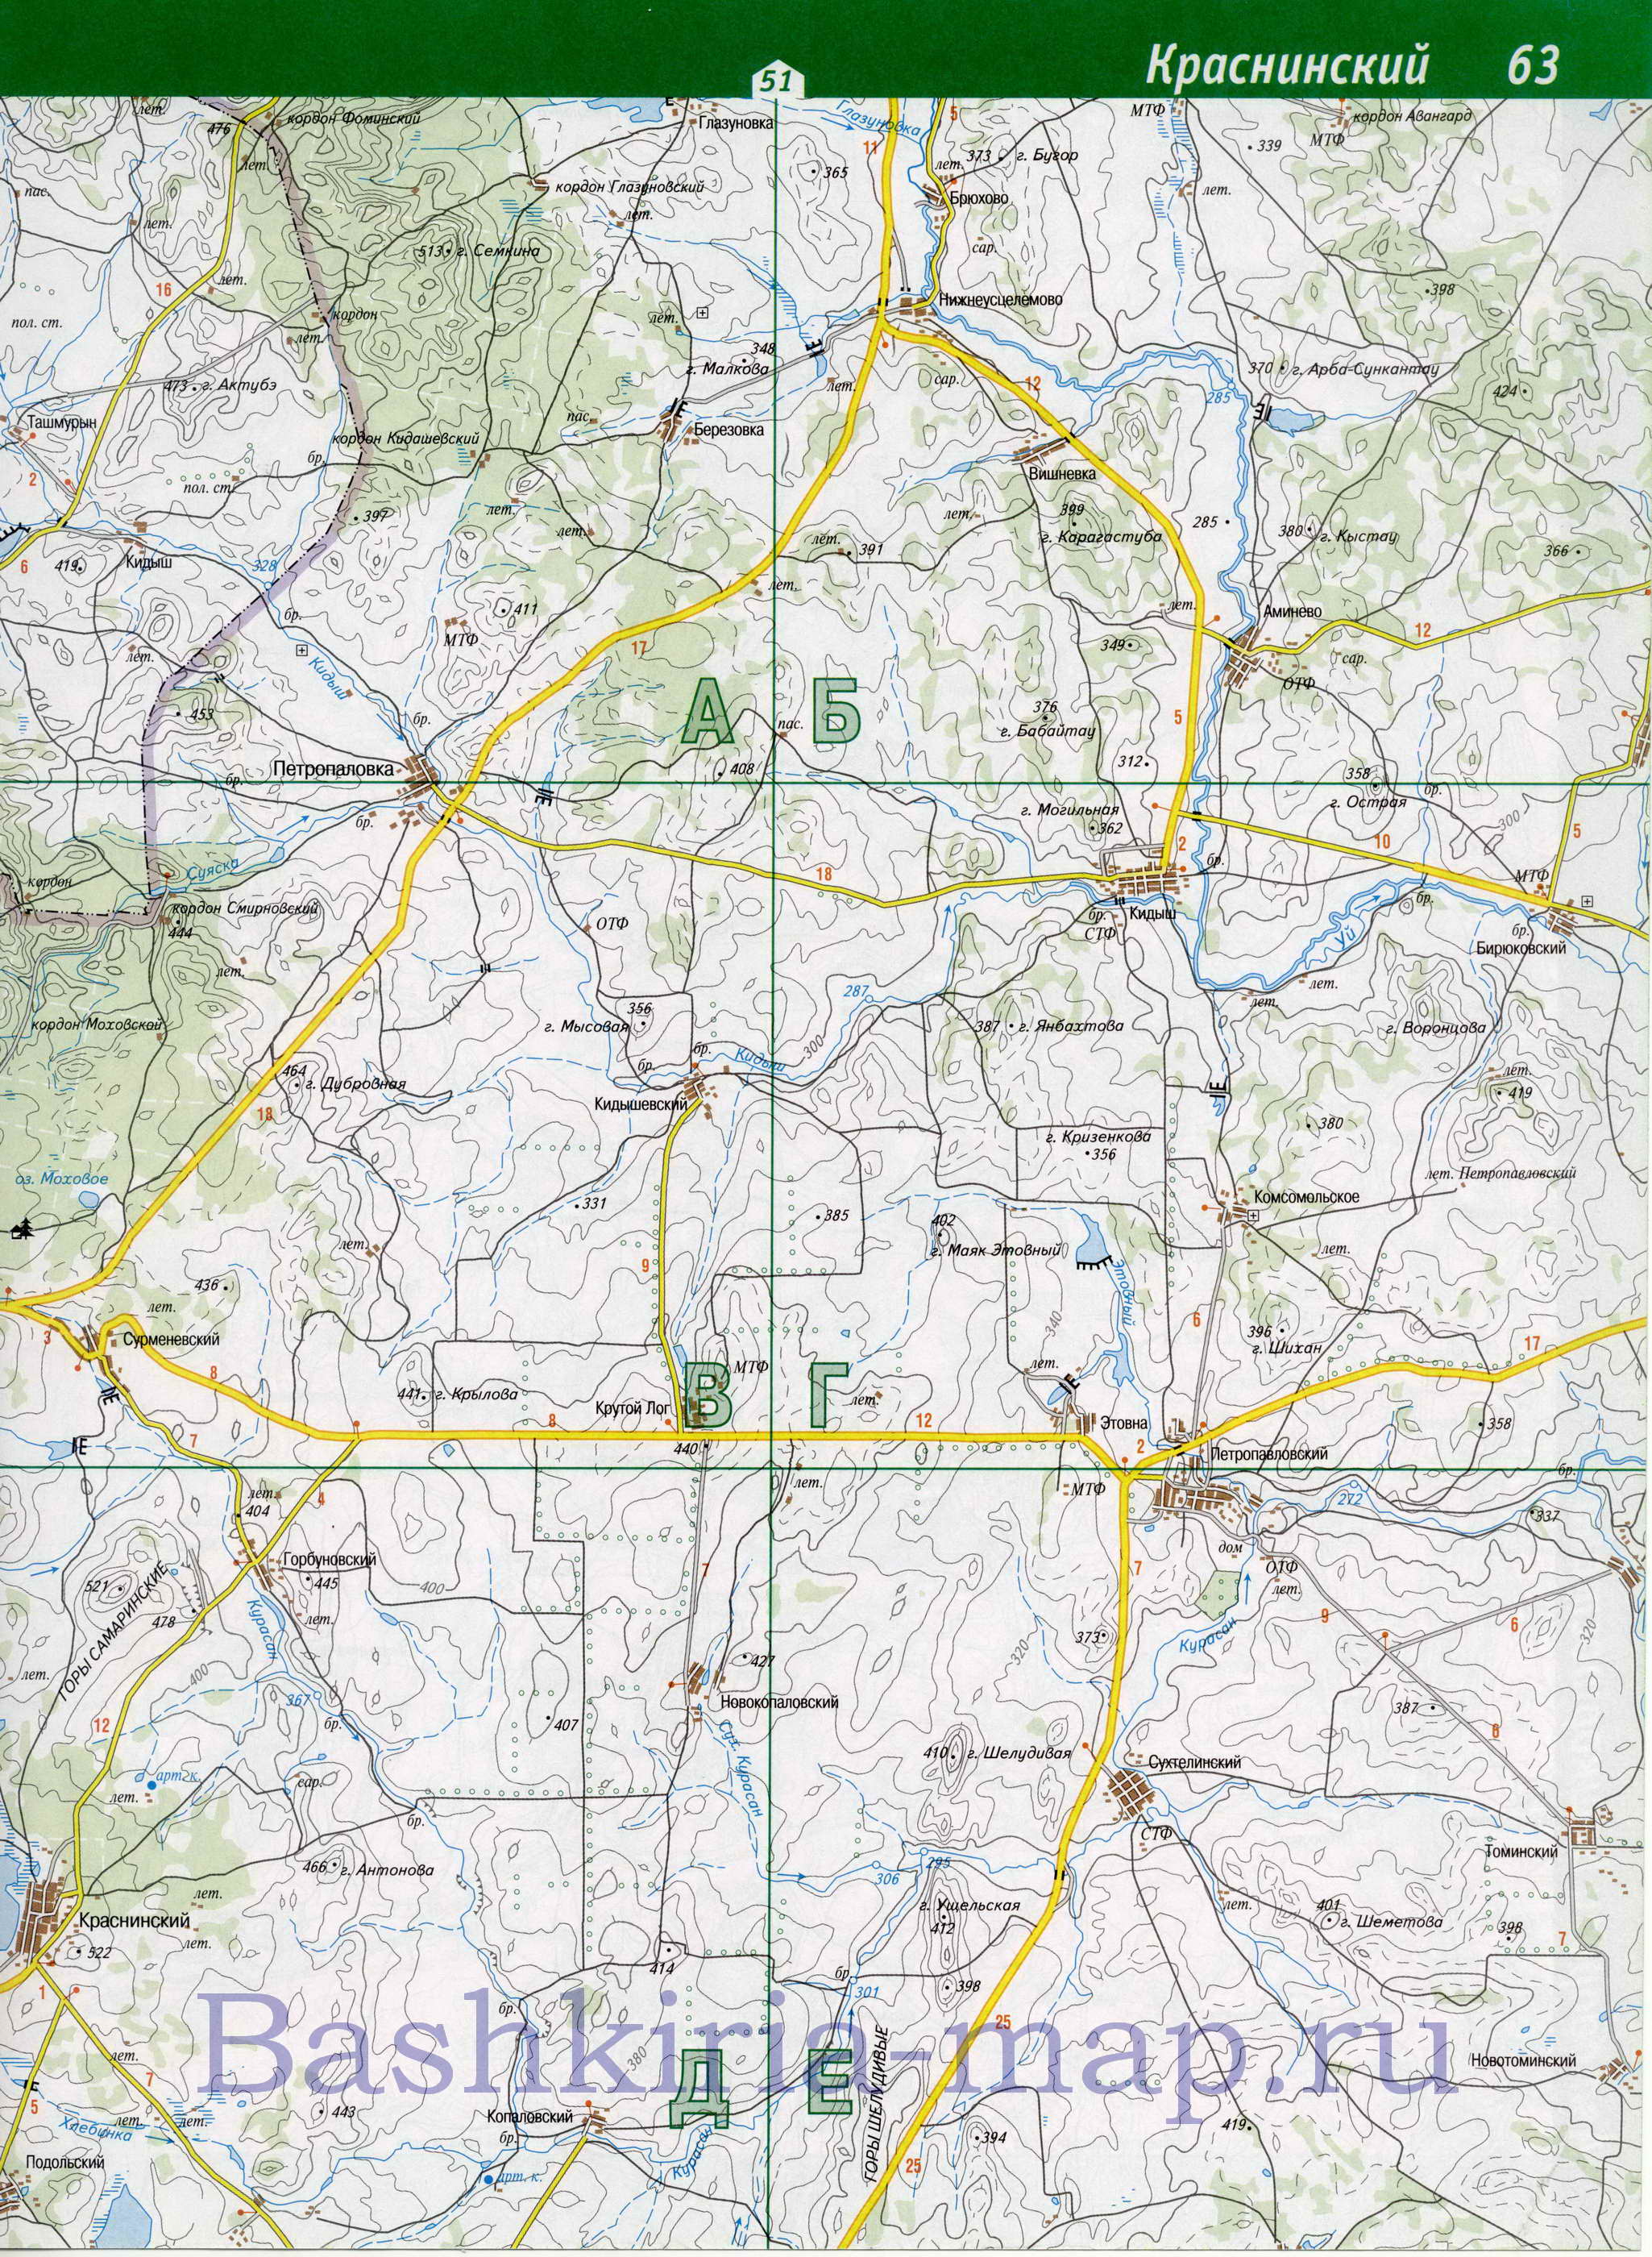 Карта Учалинского района. Подробная топографическая карта Башкирии - Учалинский район, B1 - 